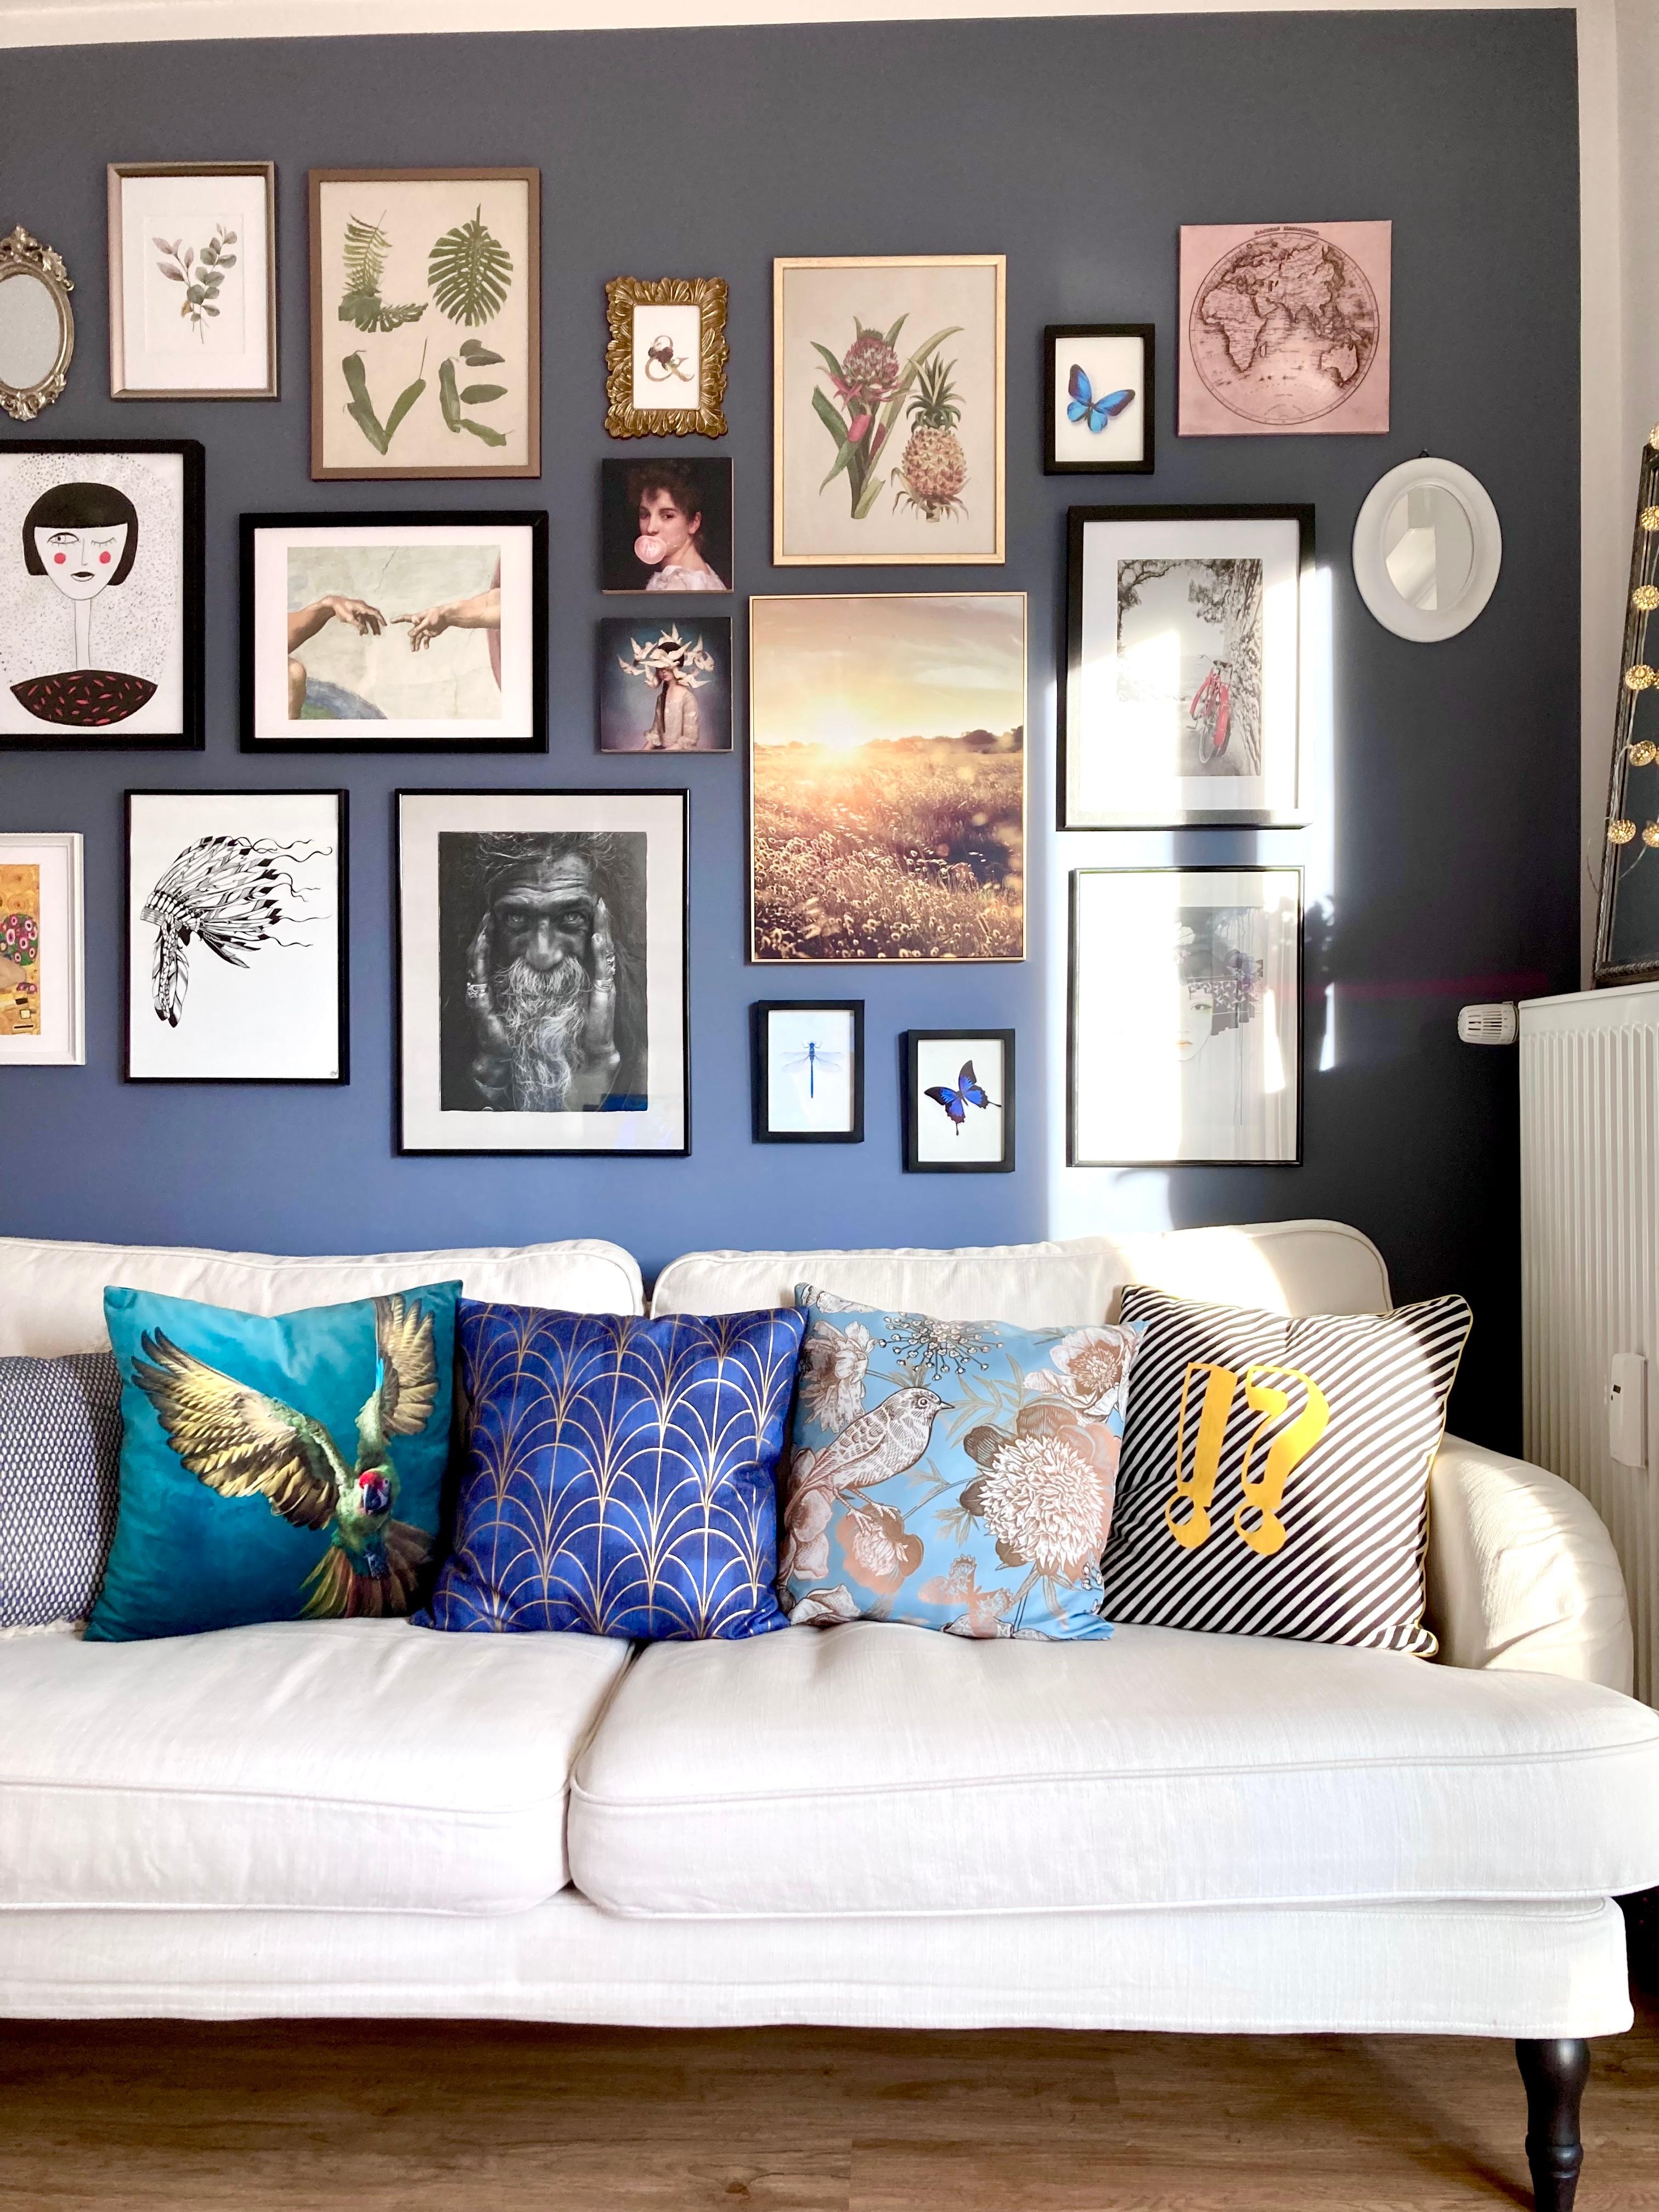 Unsere neue Lieblingsecke #couchstyle #wohnzimmer #bilderwand #gallery #interiorinspiration